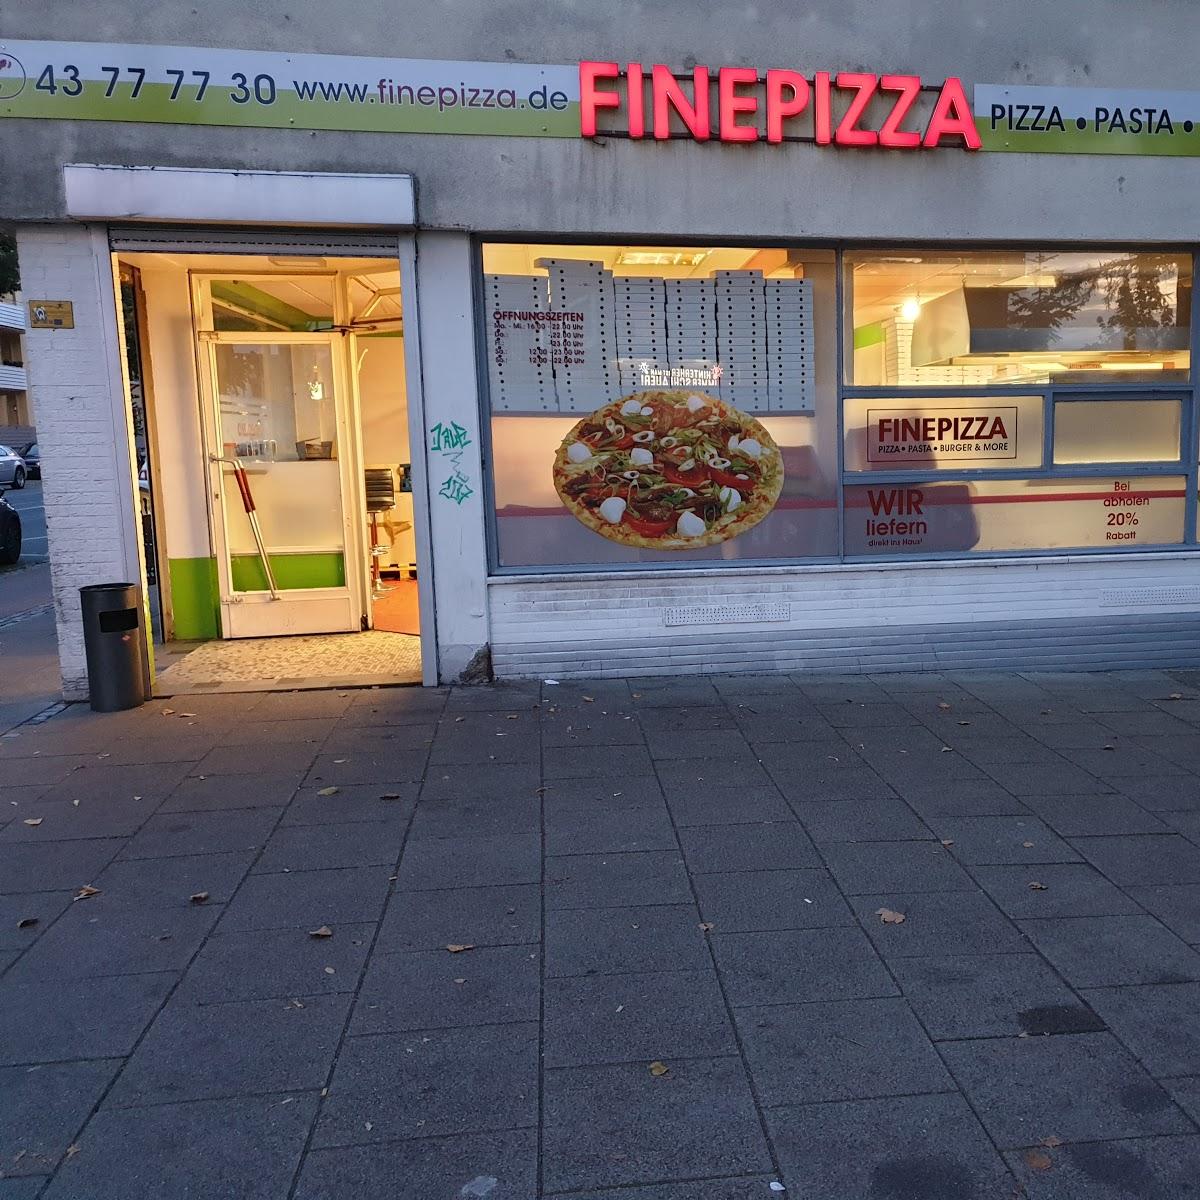 Restaurant "FinePizza Hastedt" in Bremen